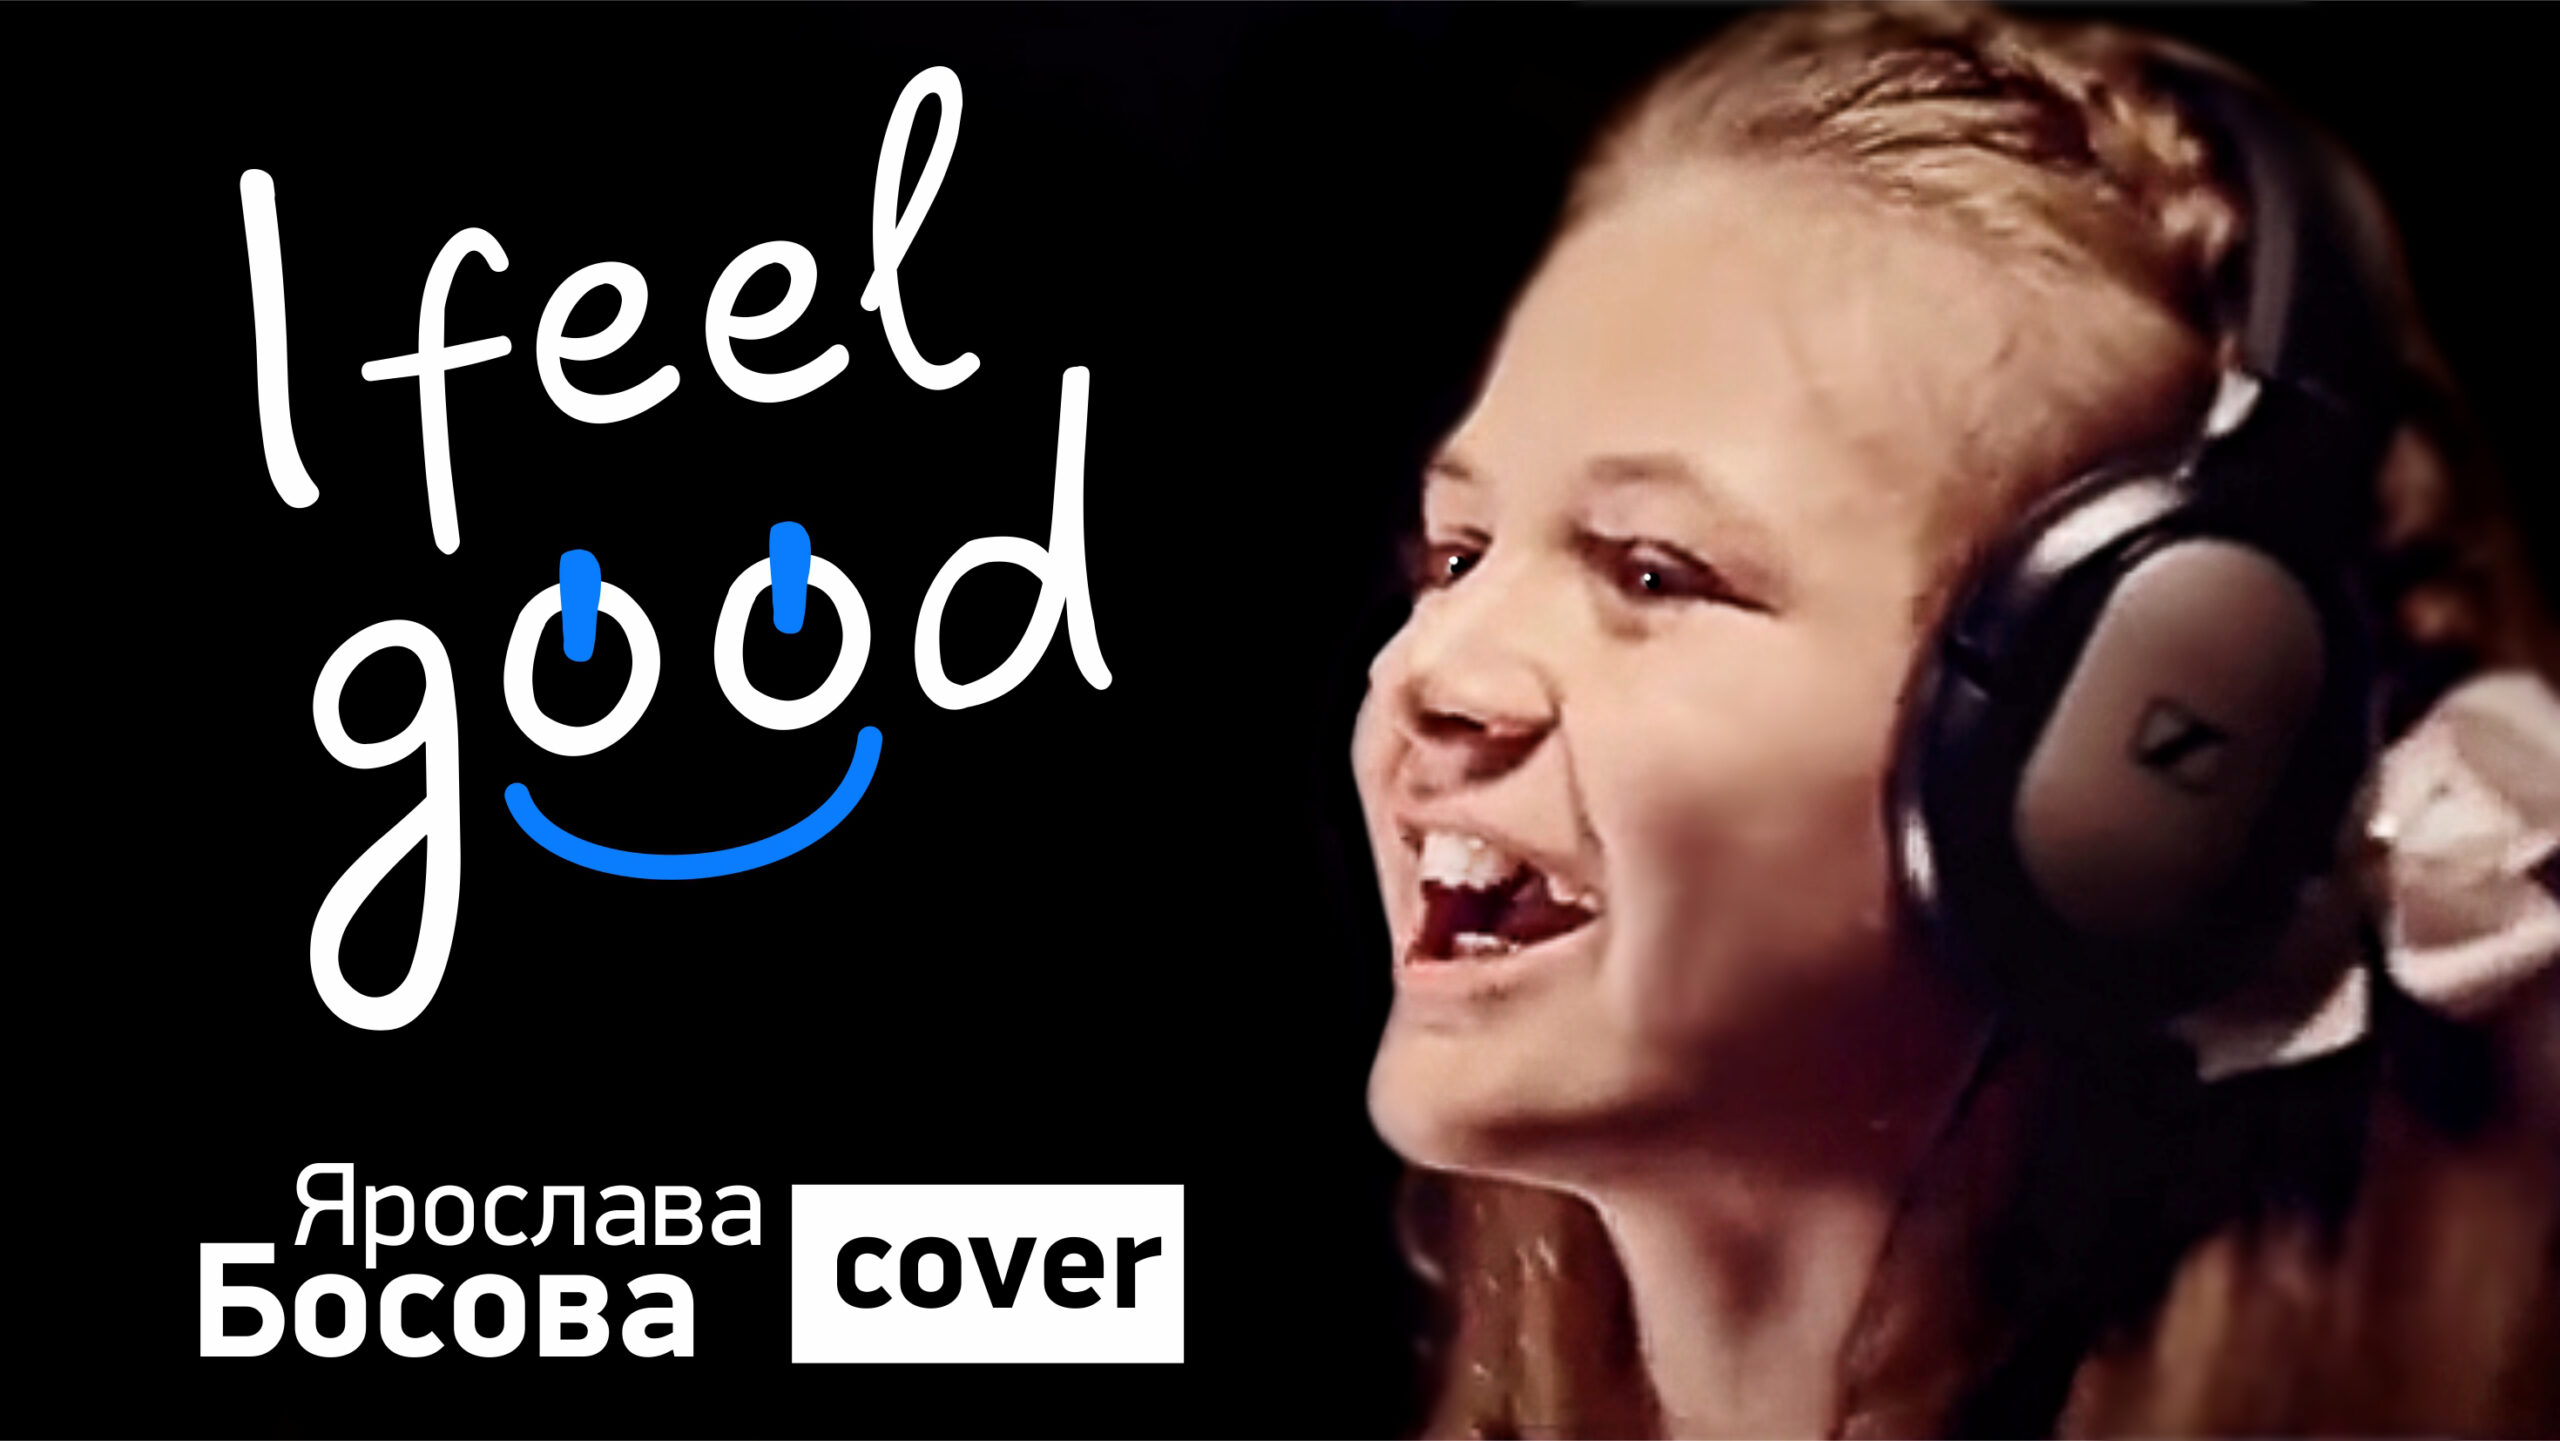 I feel good (cover) в исполнении Ярославы Босовой